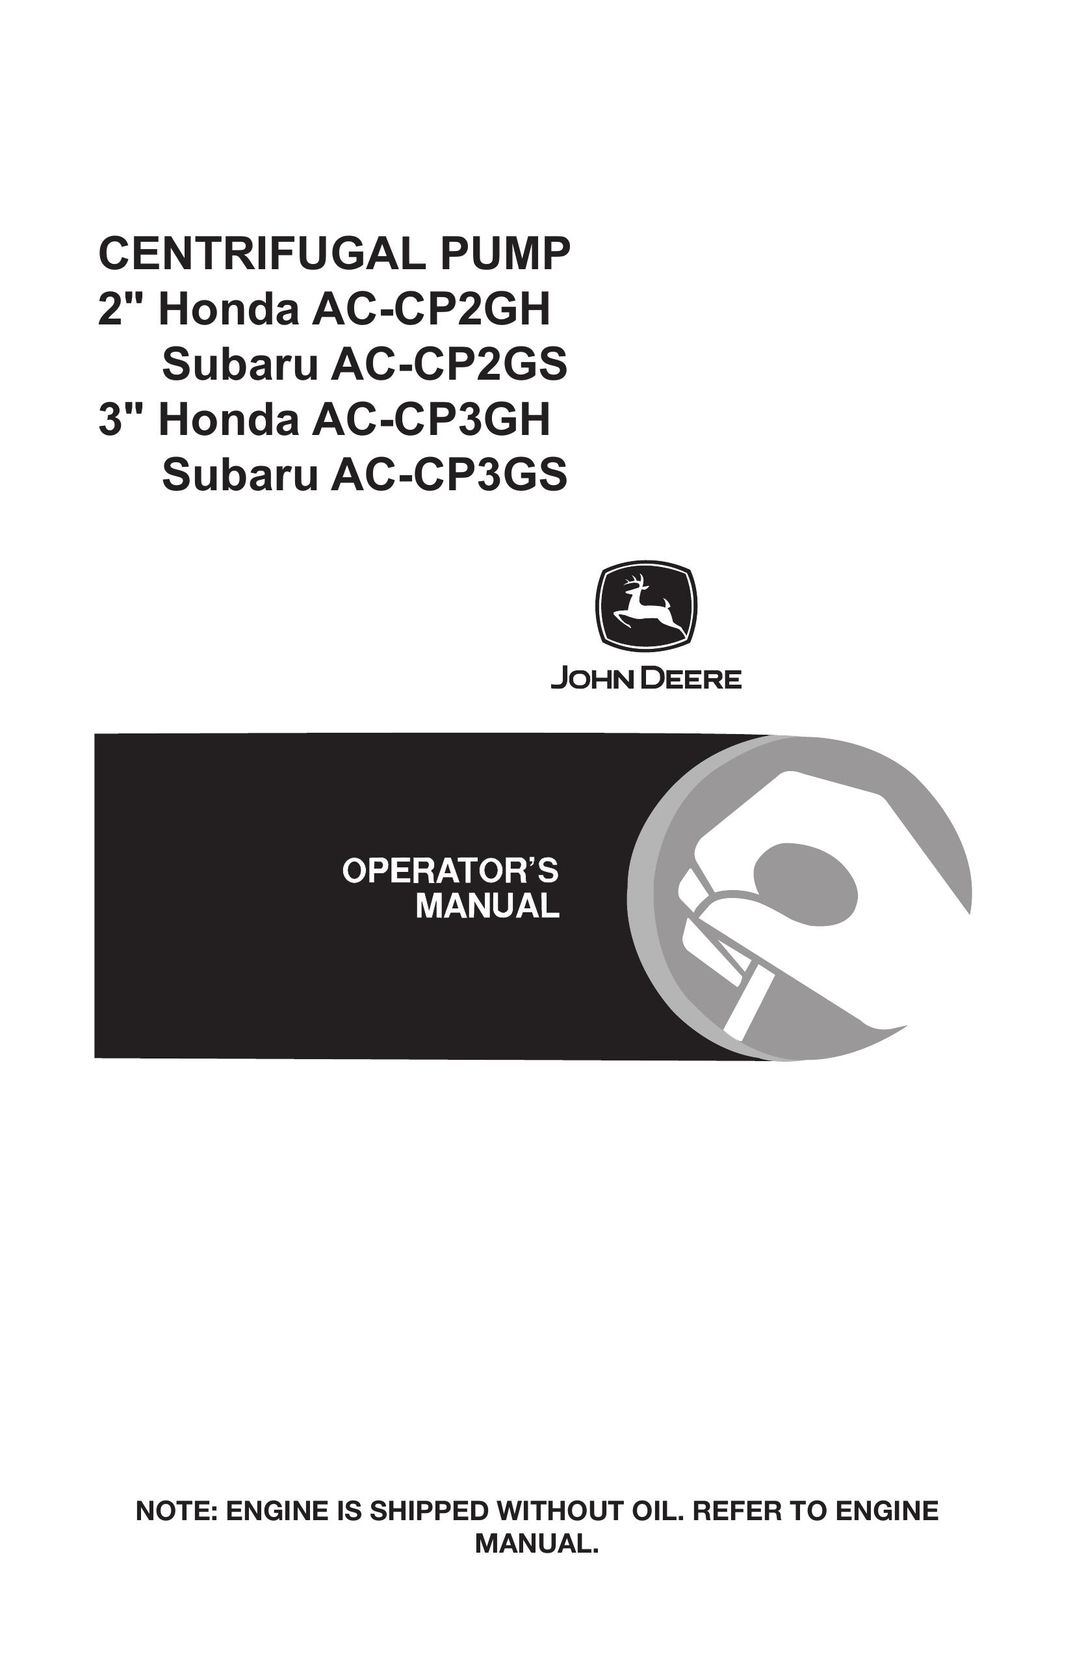 John Deere AC-CP3GS Water Pump User Manual